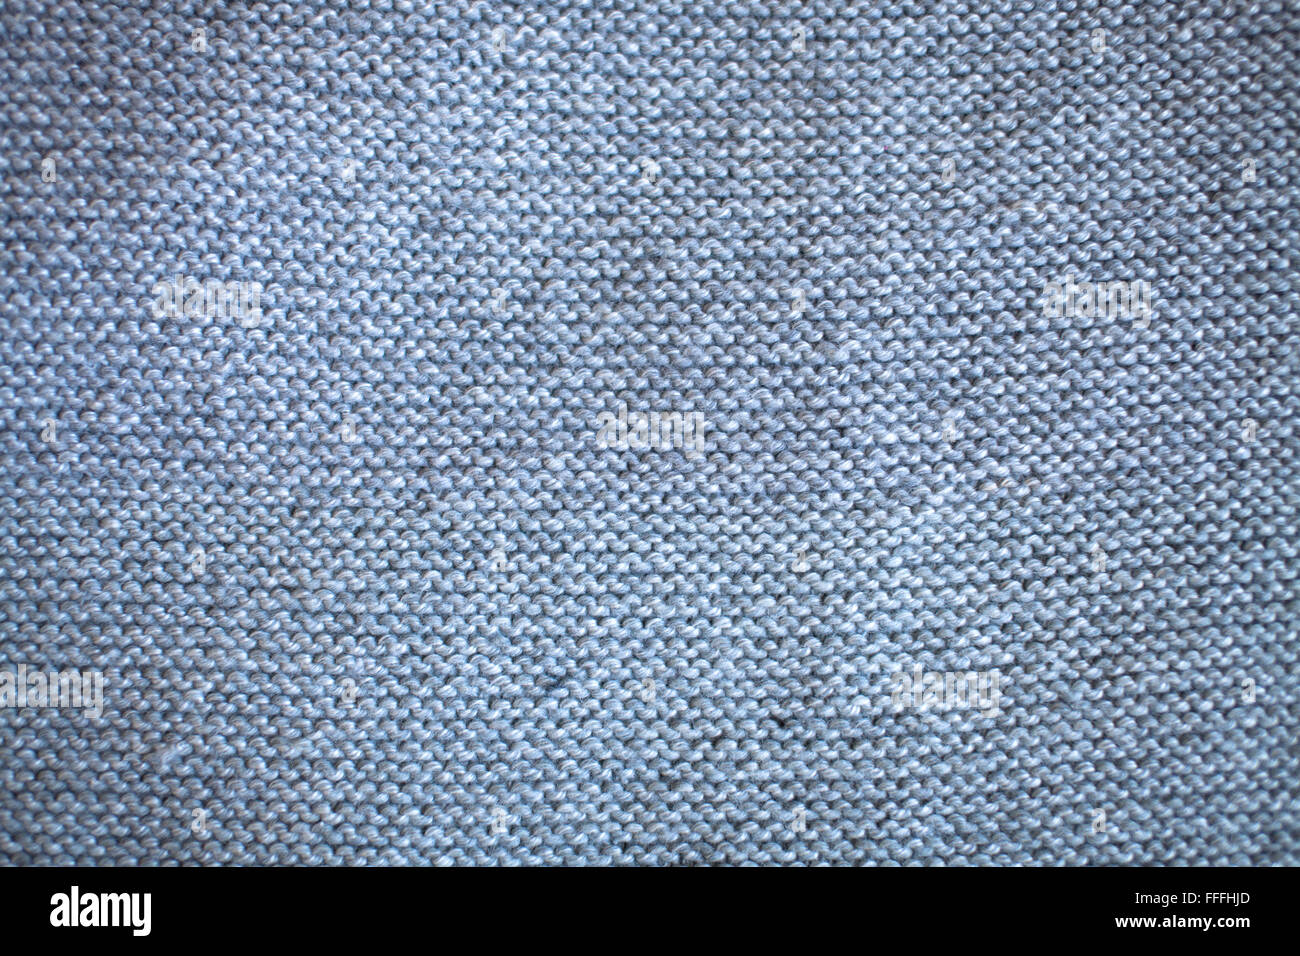 knitted fabric gray knitting pattern, knitting Stock Photo